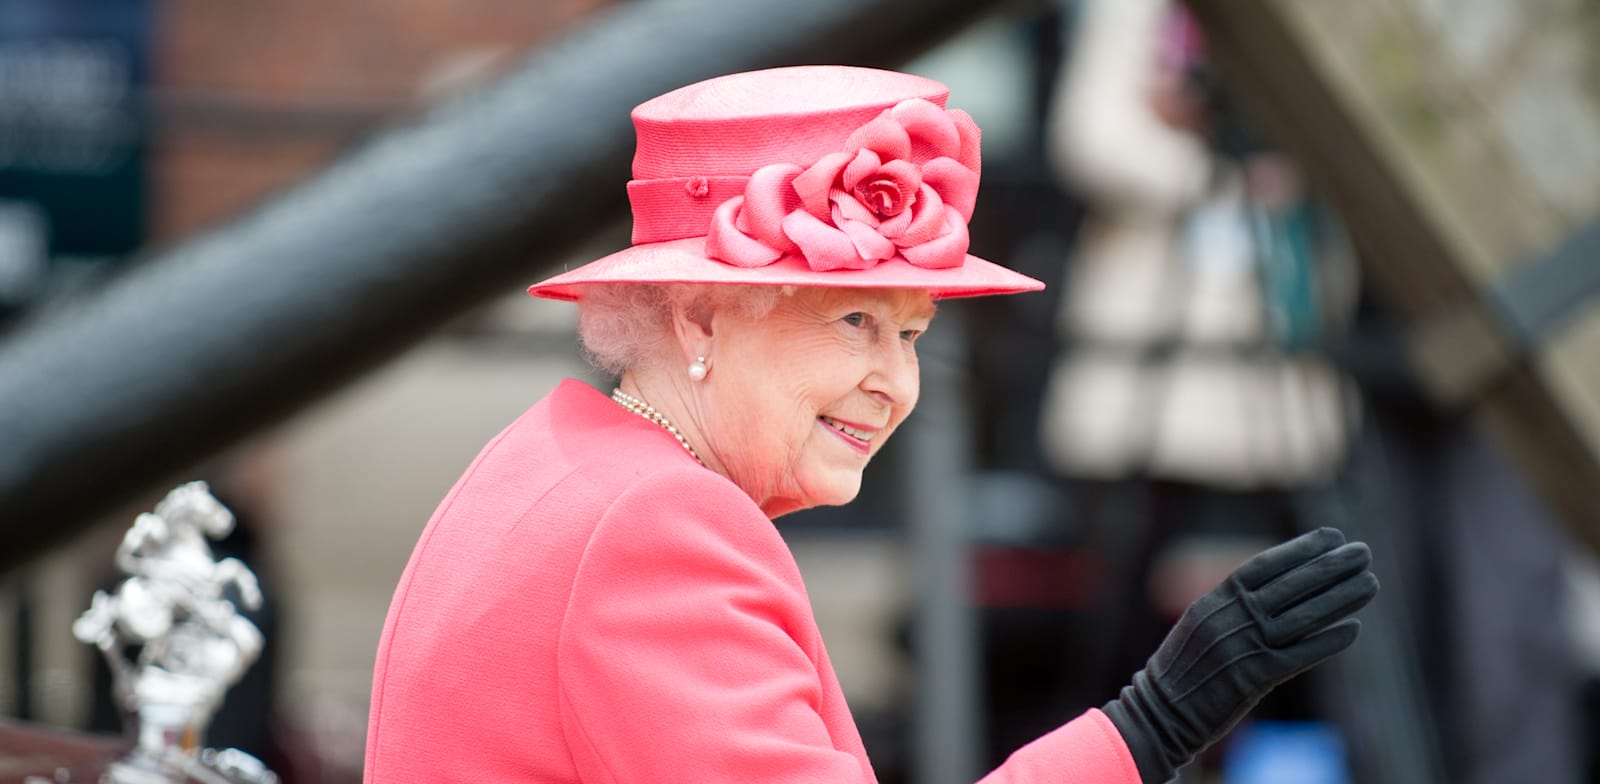 המלכה אליזבט. עם איזה אייקון תרבות שתתה תה בסרטון לרגל חגיגות ה-70 לשלטונה? / צילום: Shutterstock